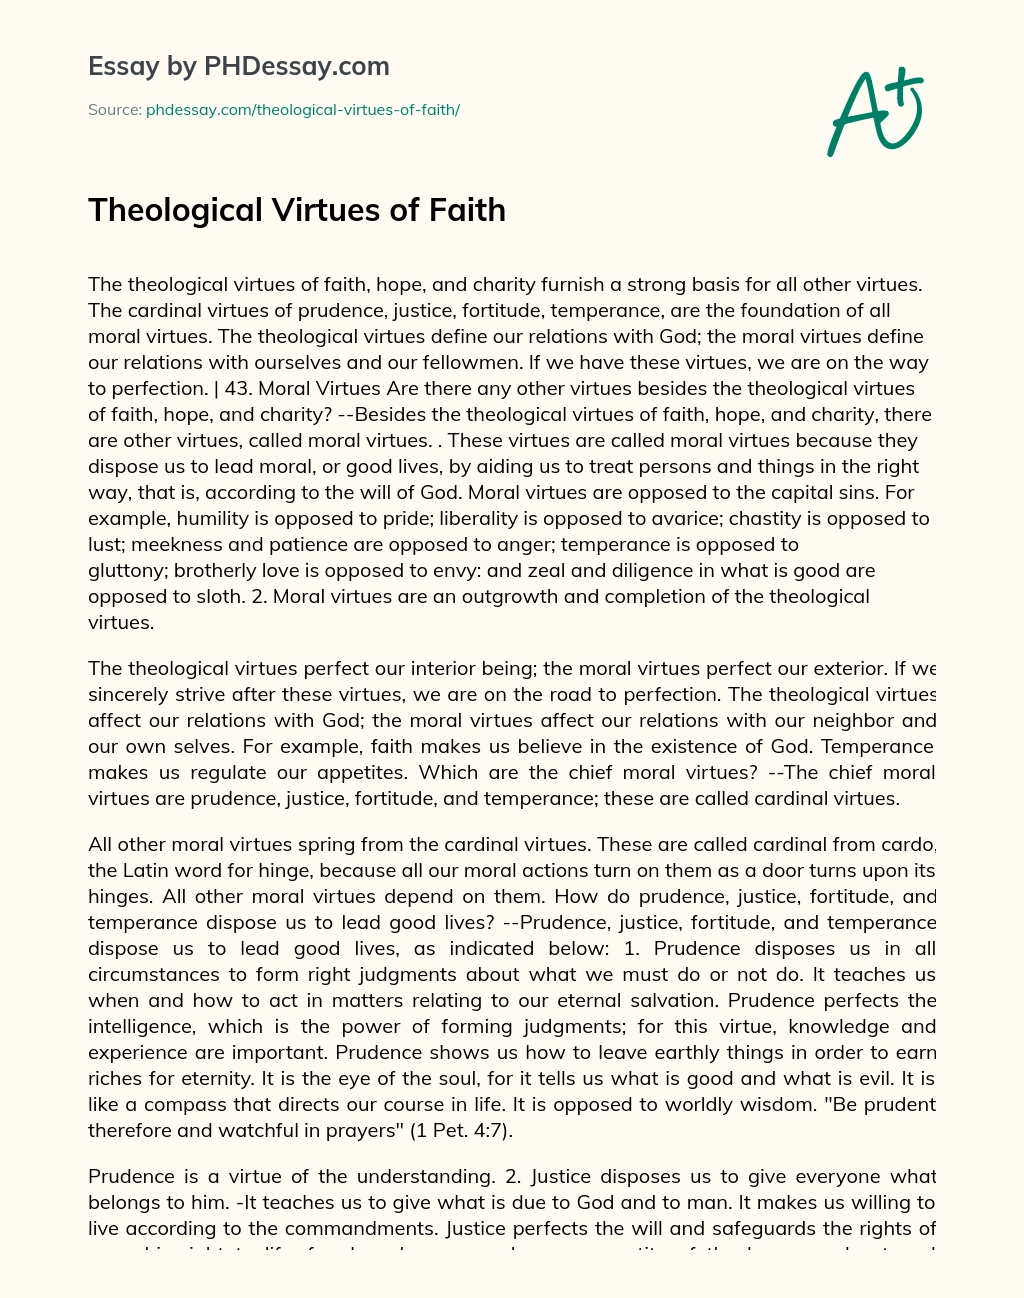 Theological Virtues of Faith essay